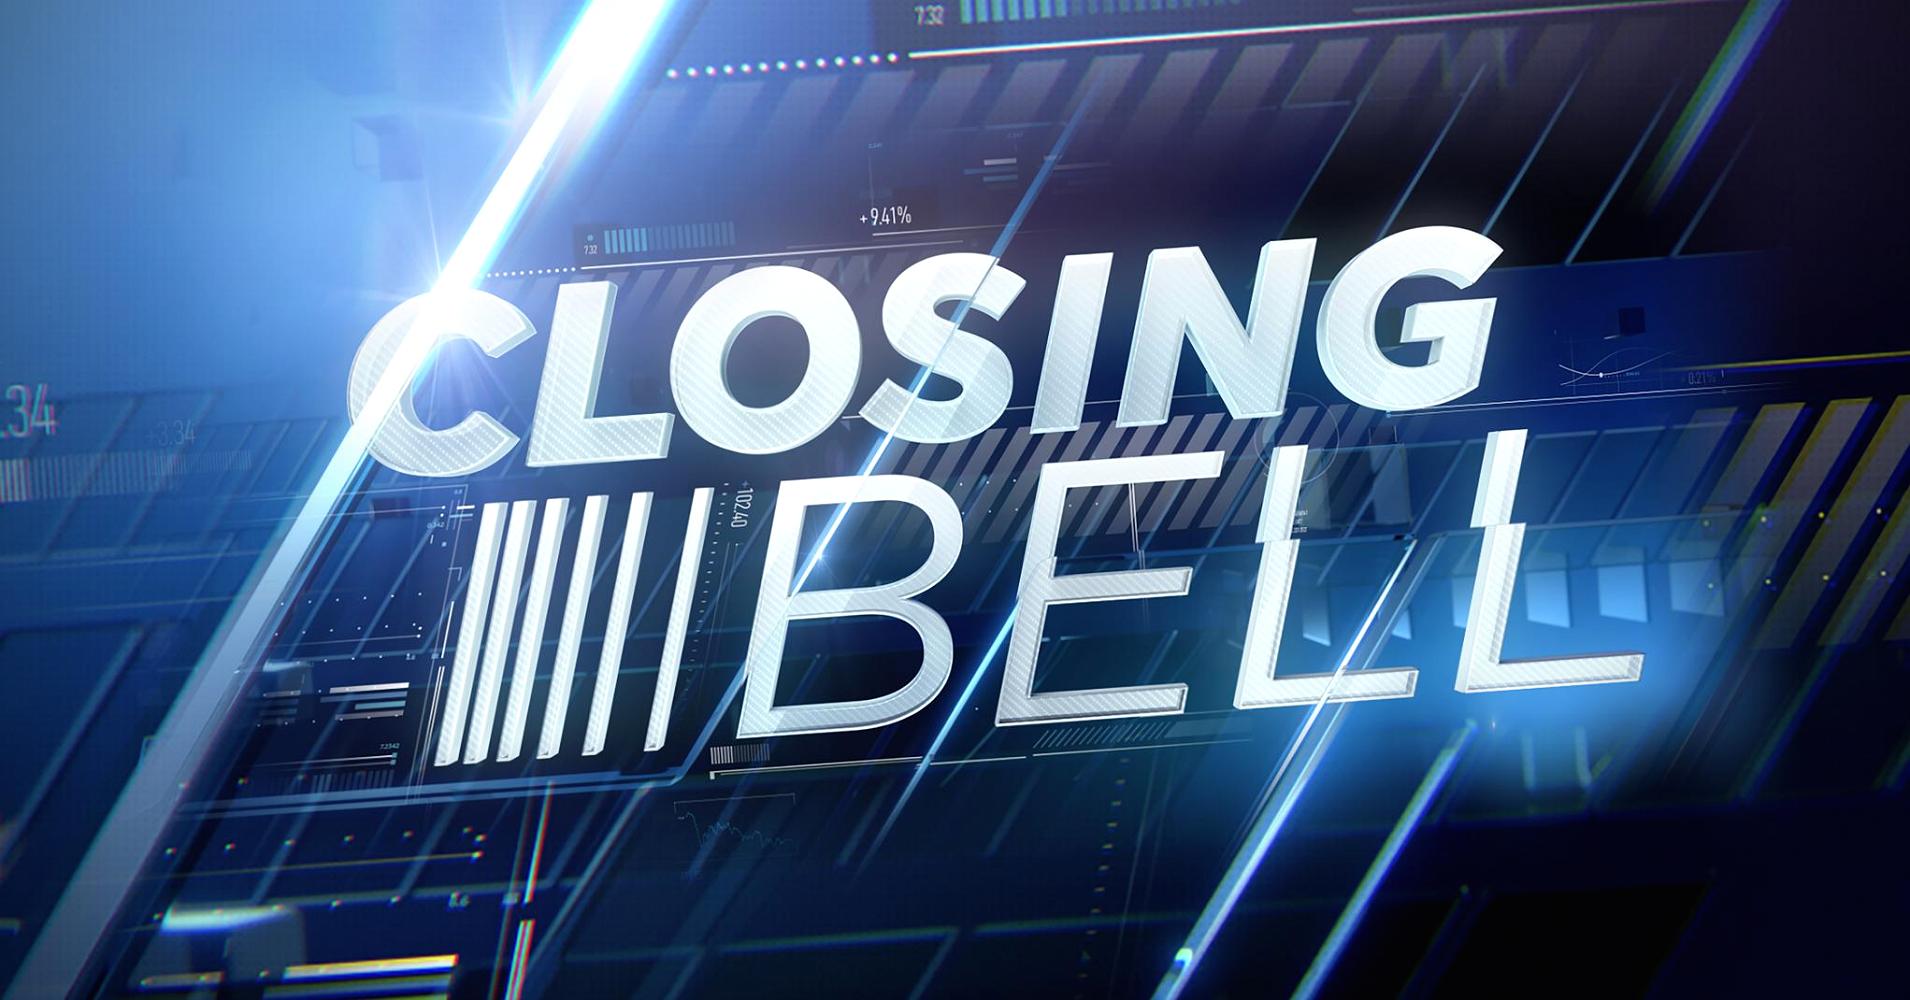 Closing_bell_D_Street.